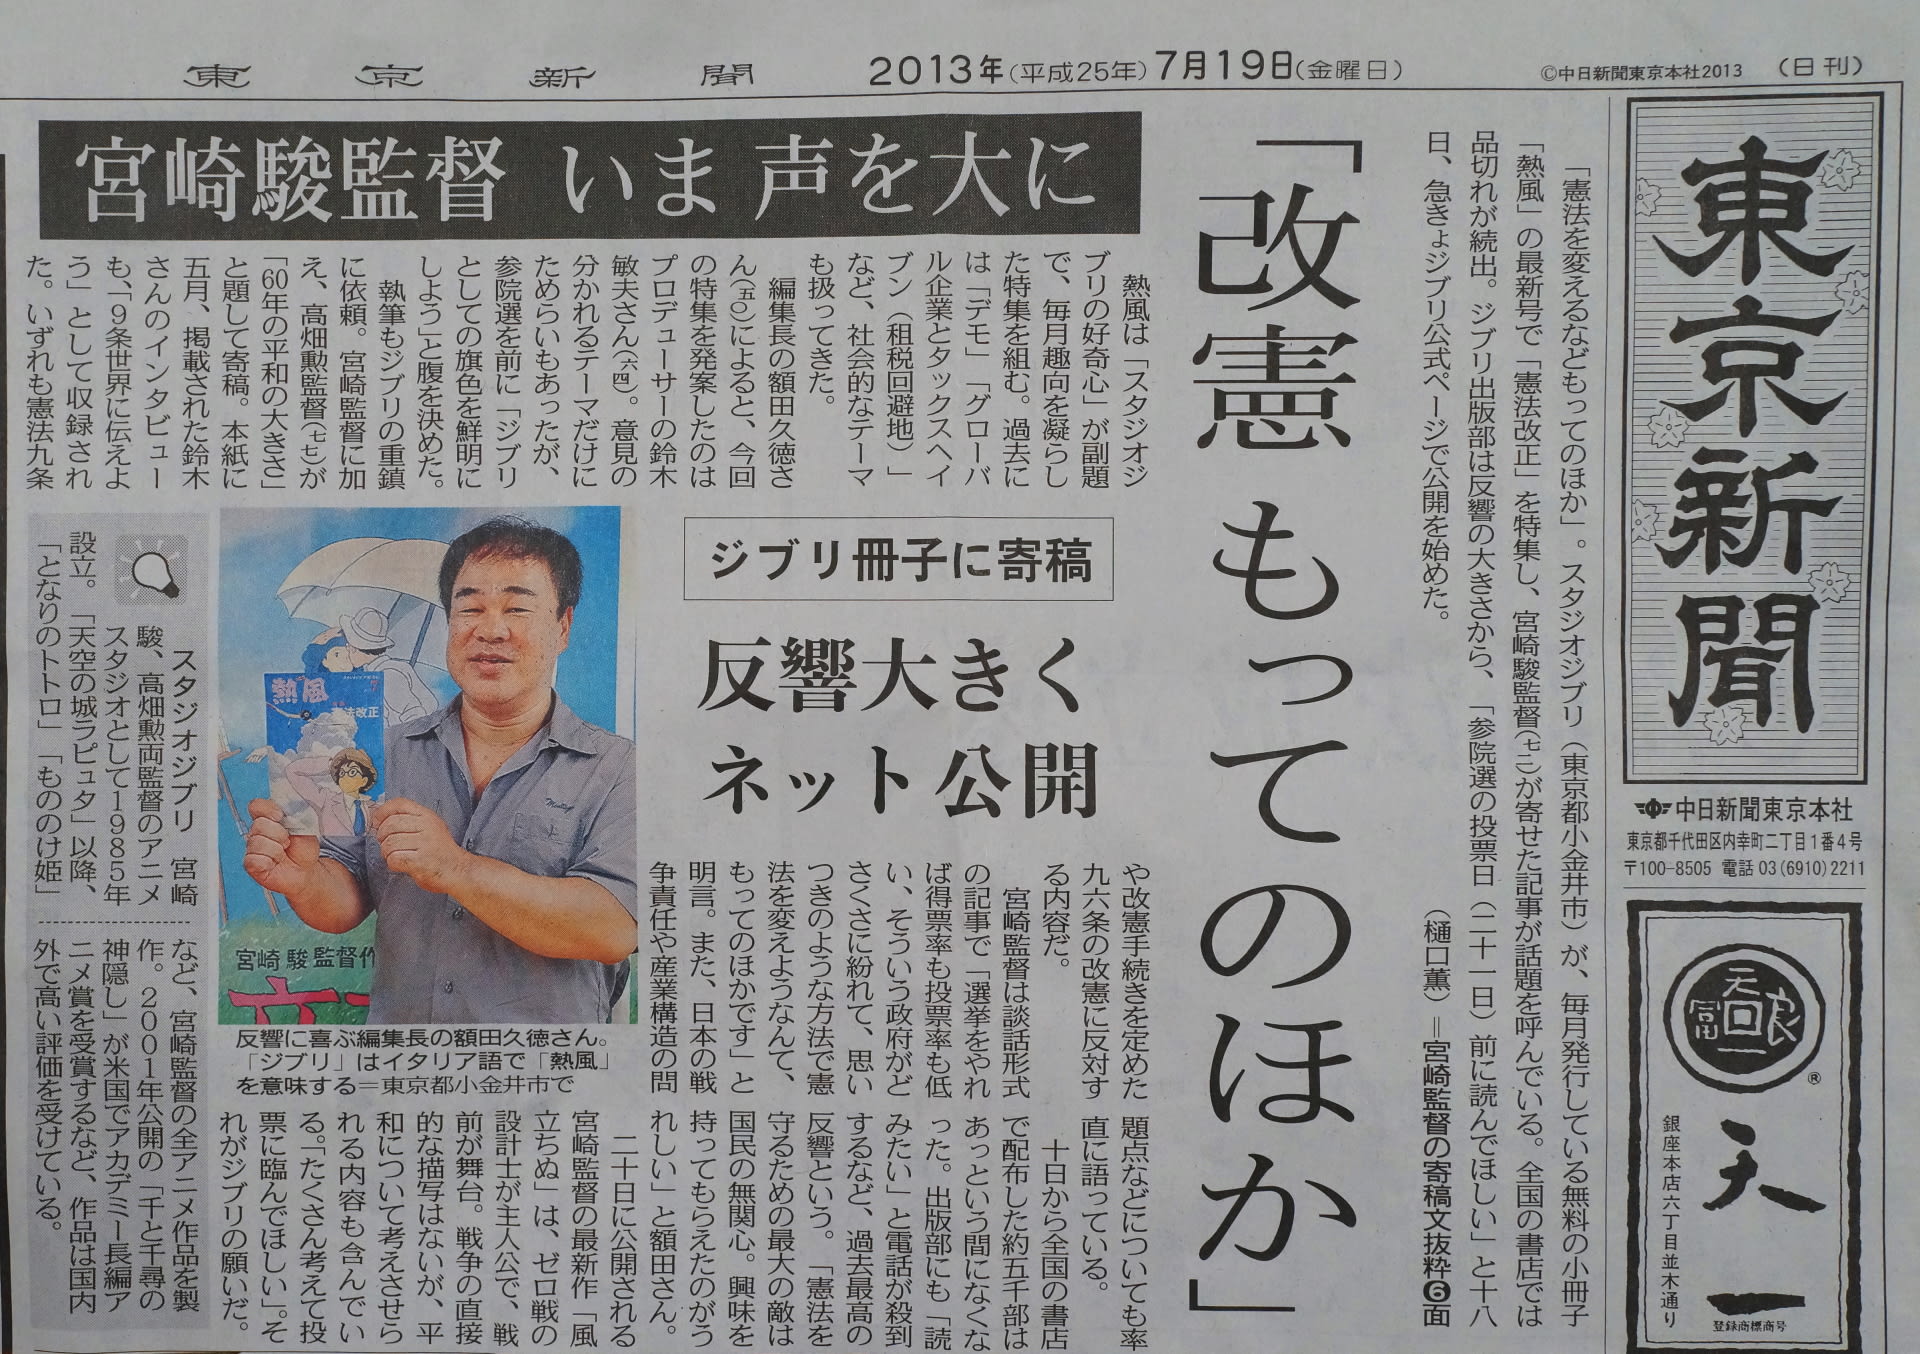 スタジオ ジブリ 宮崎駿監督 改憲もってのほか １９日東京新聞一面トップ 思索の日記 クリックで全体が表示されます